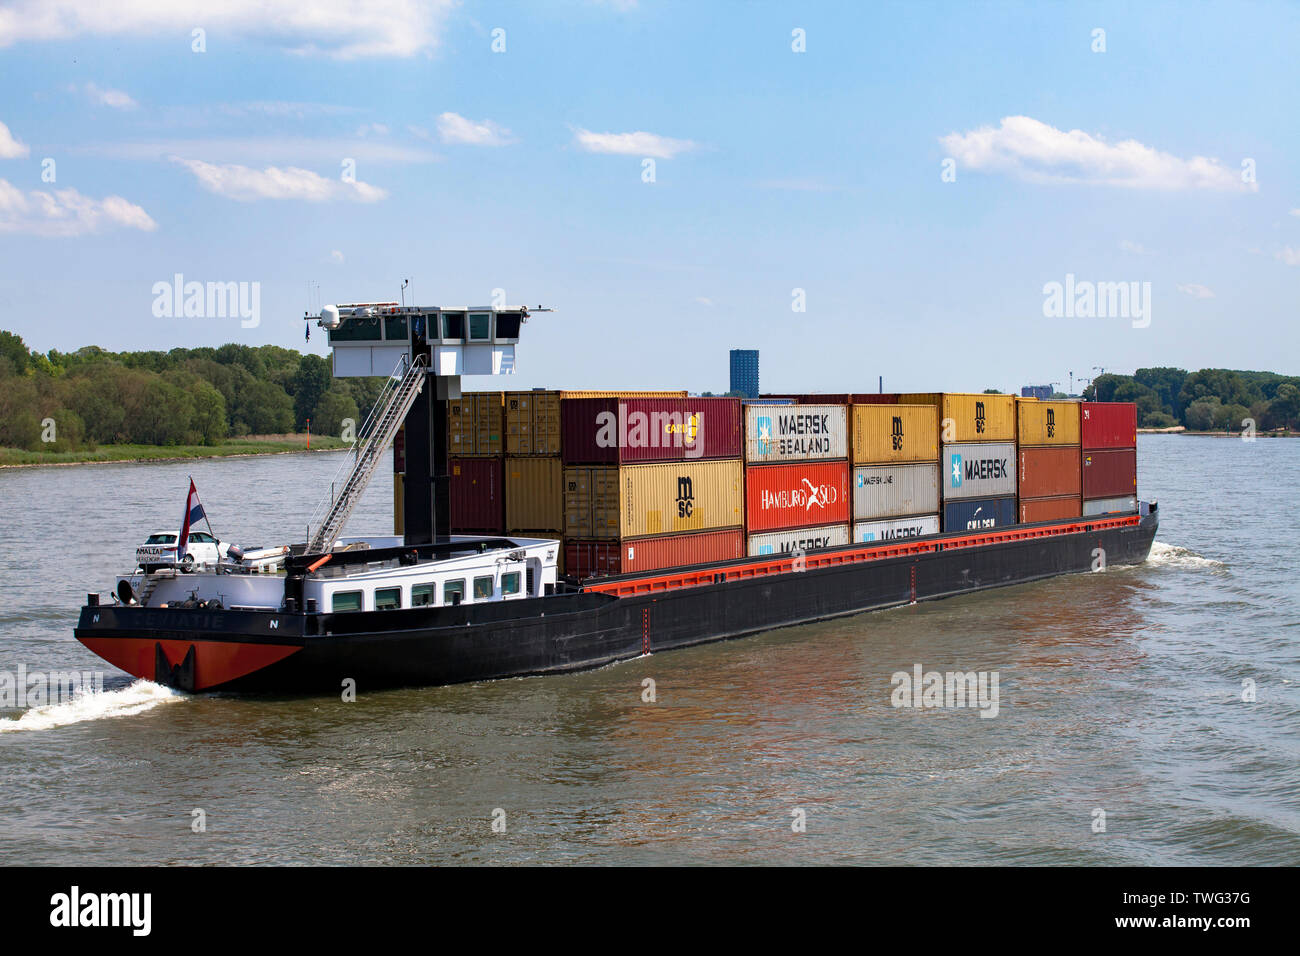 Ein Containerschiff auf dem Rhein in der Stadt Stadtteil Niehl, Köln, Deutschland ein Containerschiff auf dem Rhein im Stadtteil Niehl, Koeln,,Deuts Stockfoto